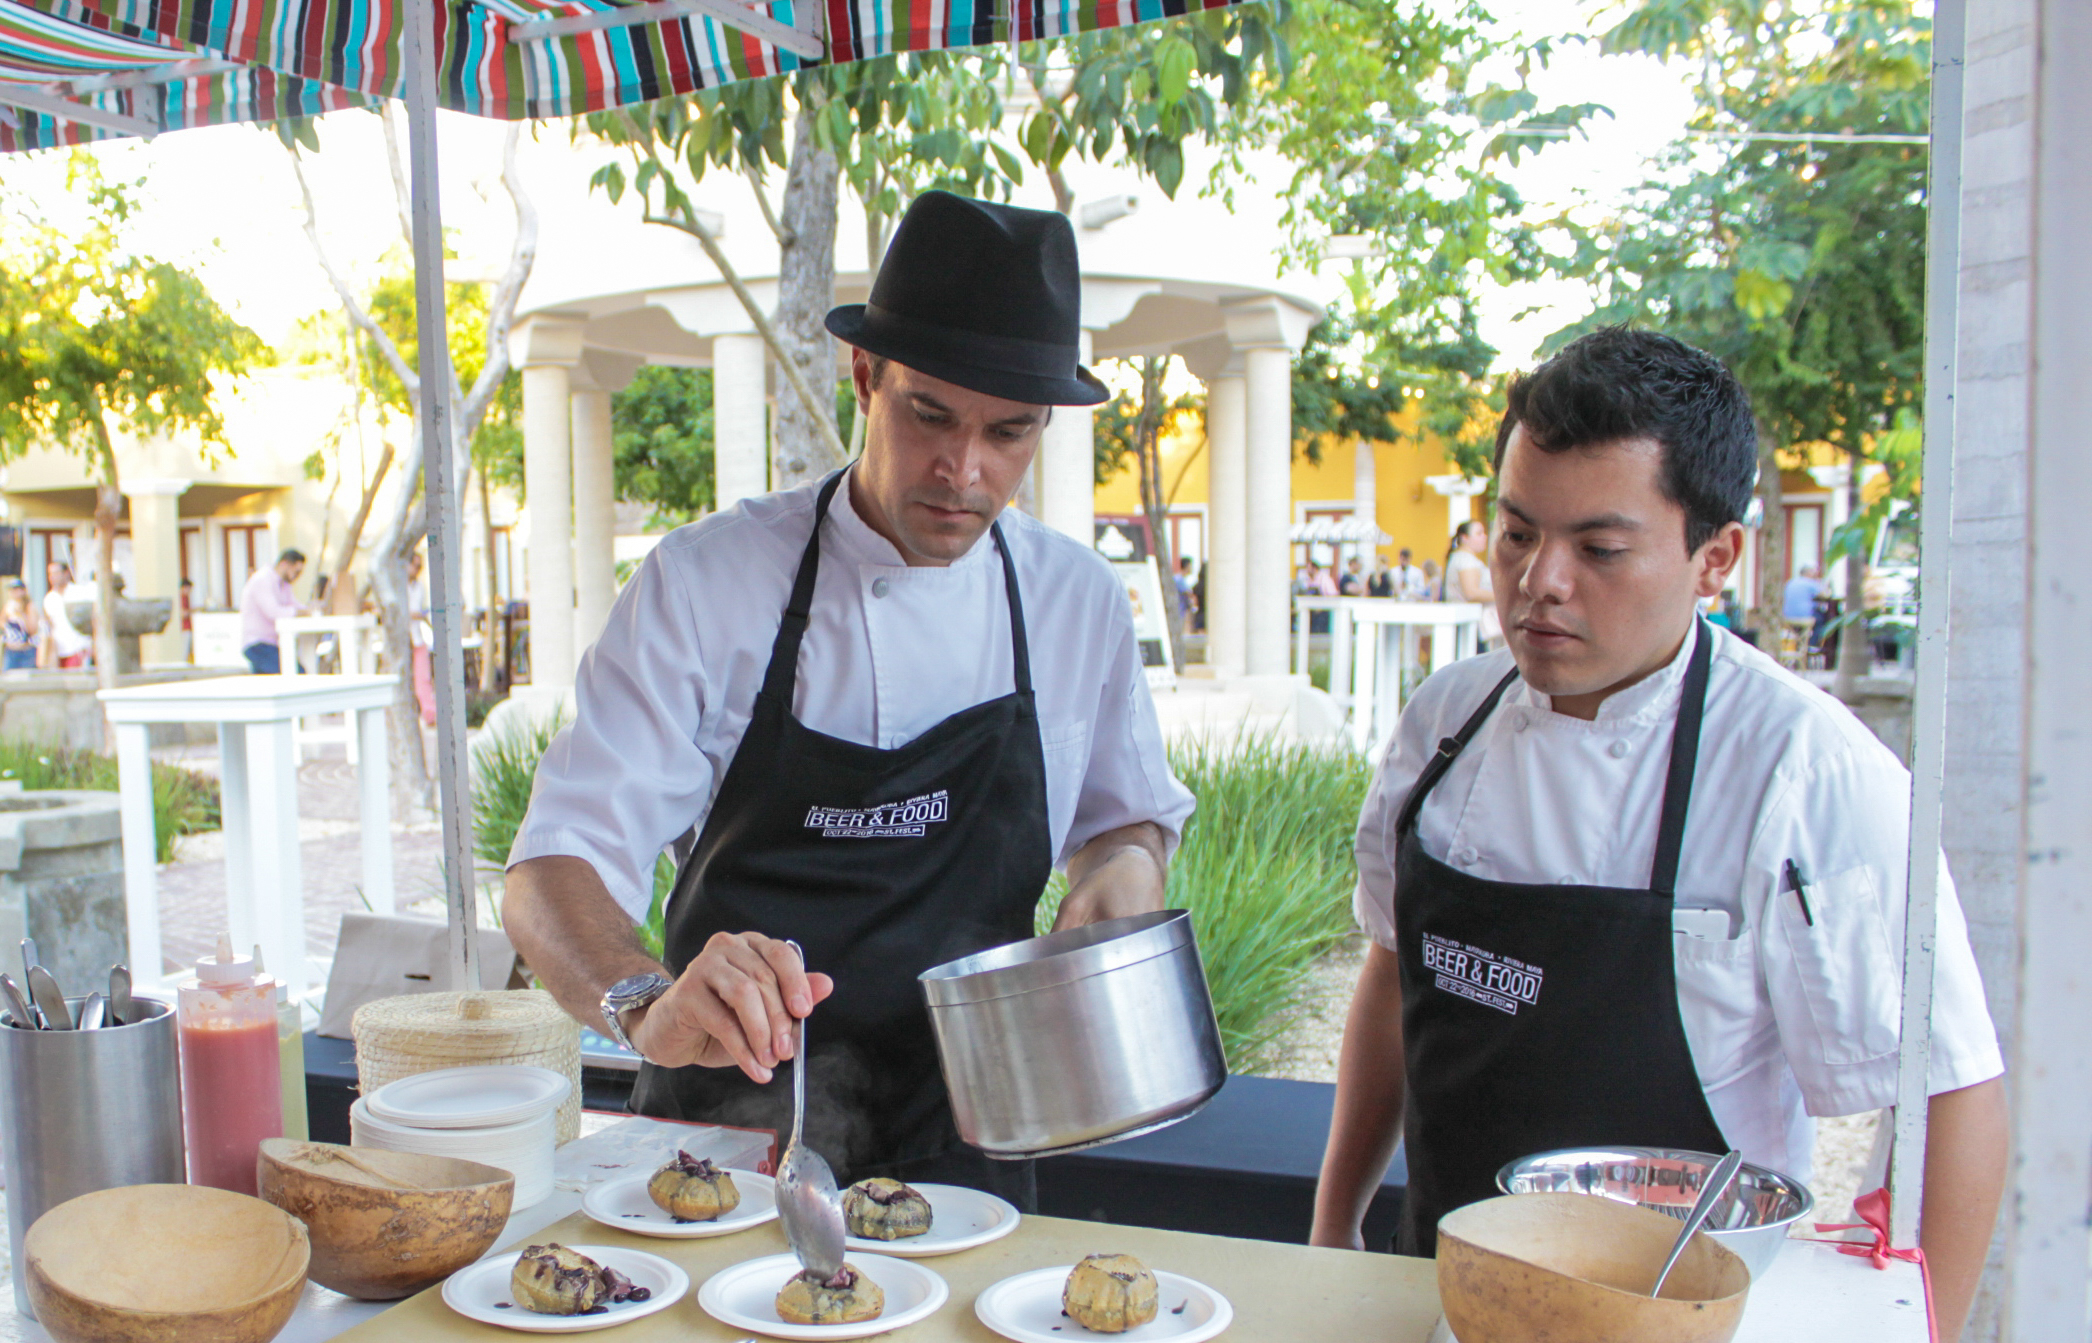 Riviera Maya Beer & Street Food Festival Chefs Preparing Food